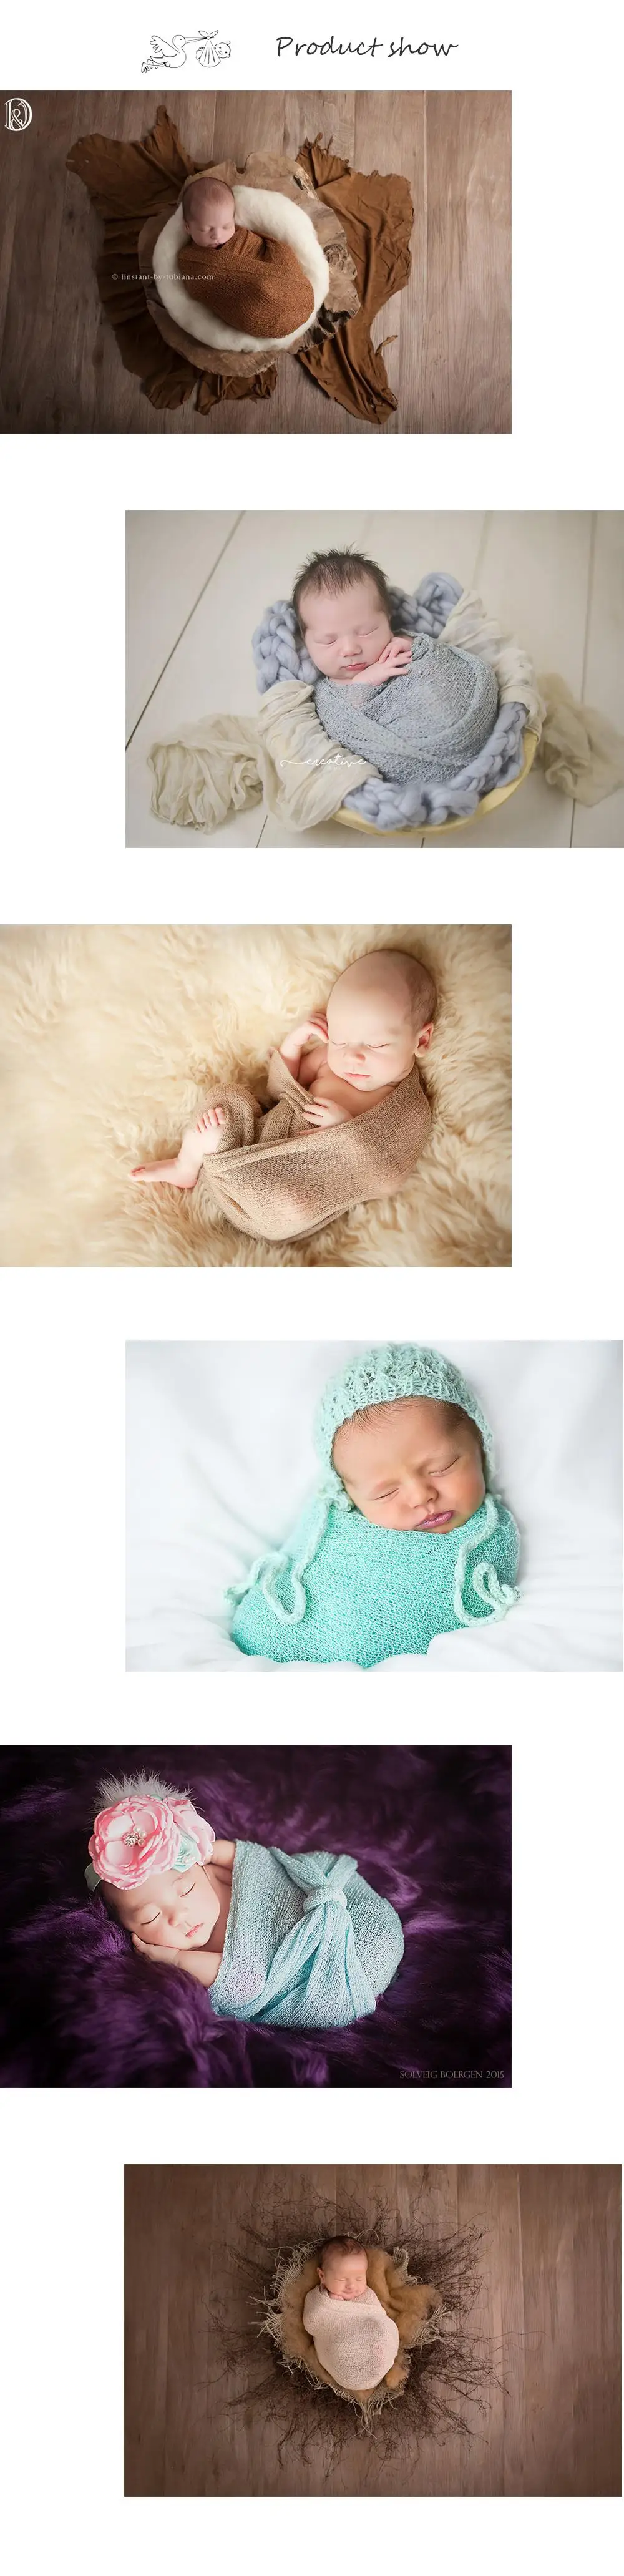 10 шт./лот смешивания цвет мягкий стрейч вязать обертывания для новорожденных подставки фотографий пеленки для фотографирования